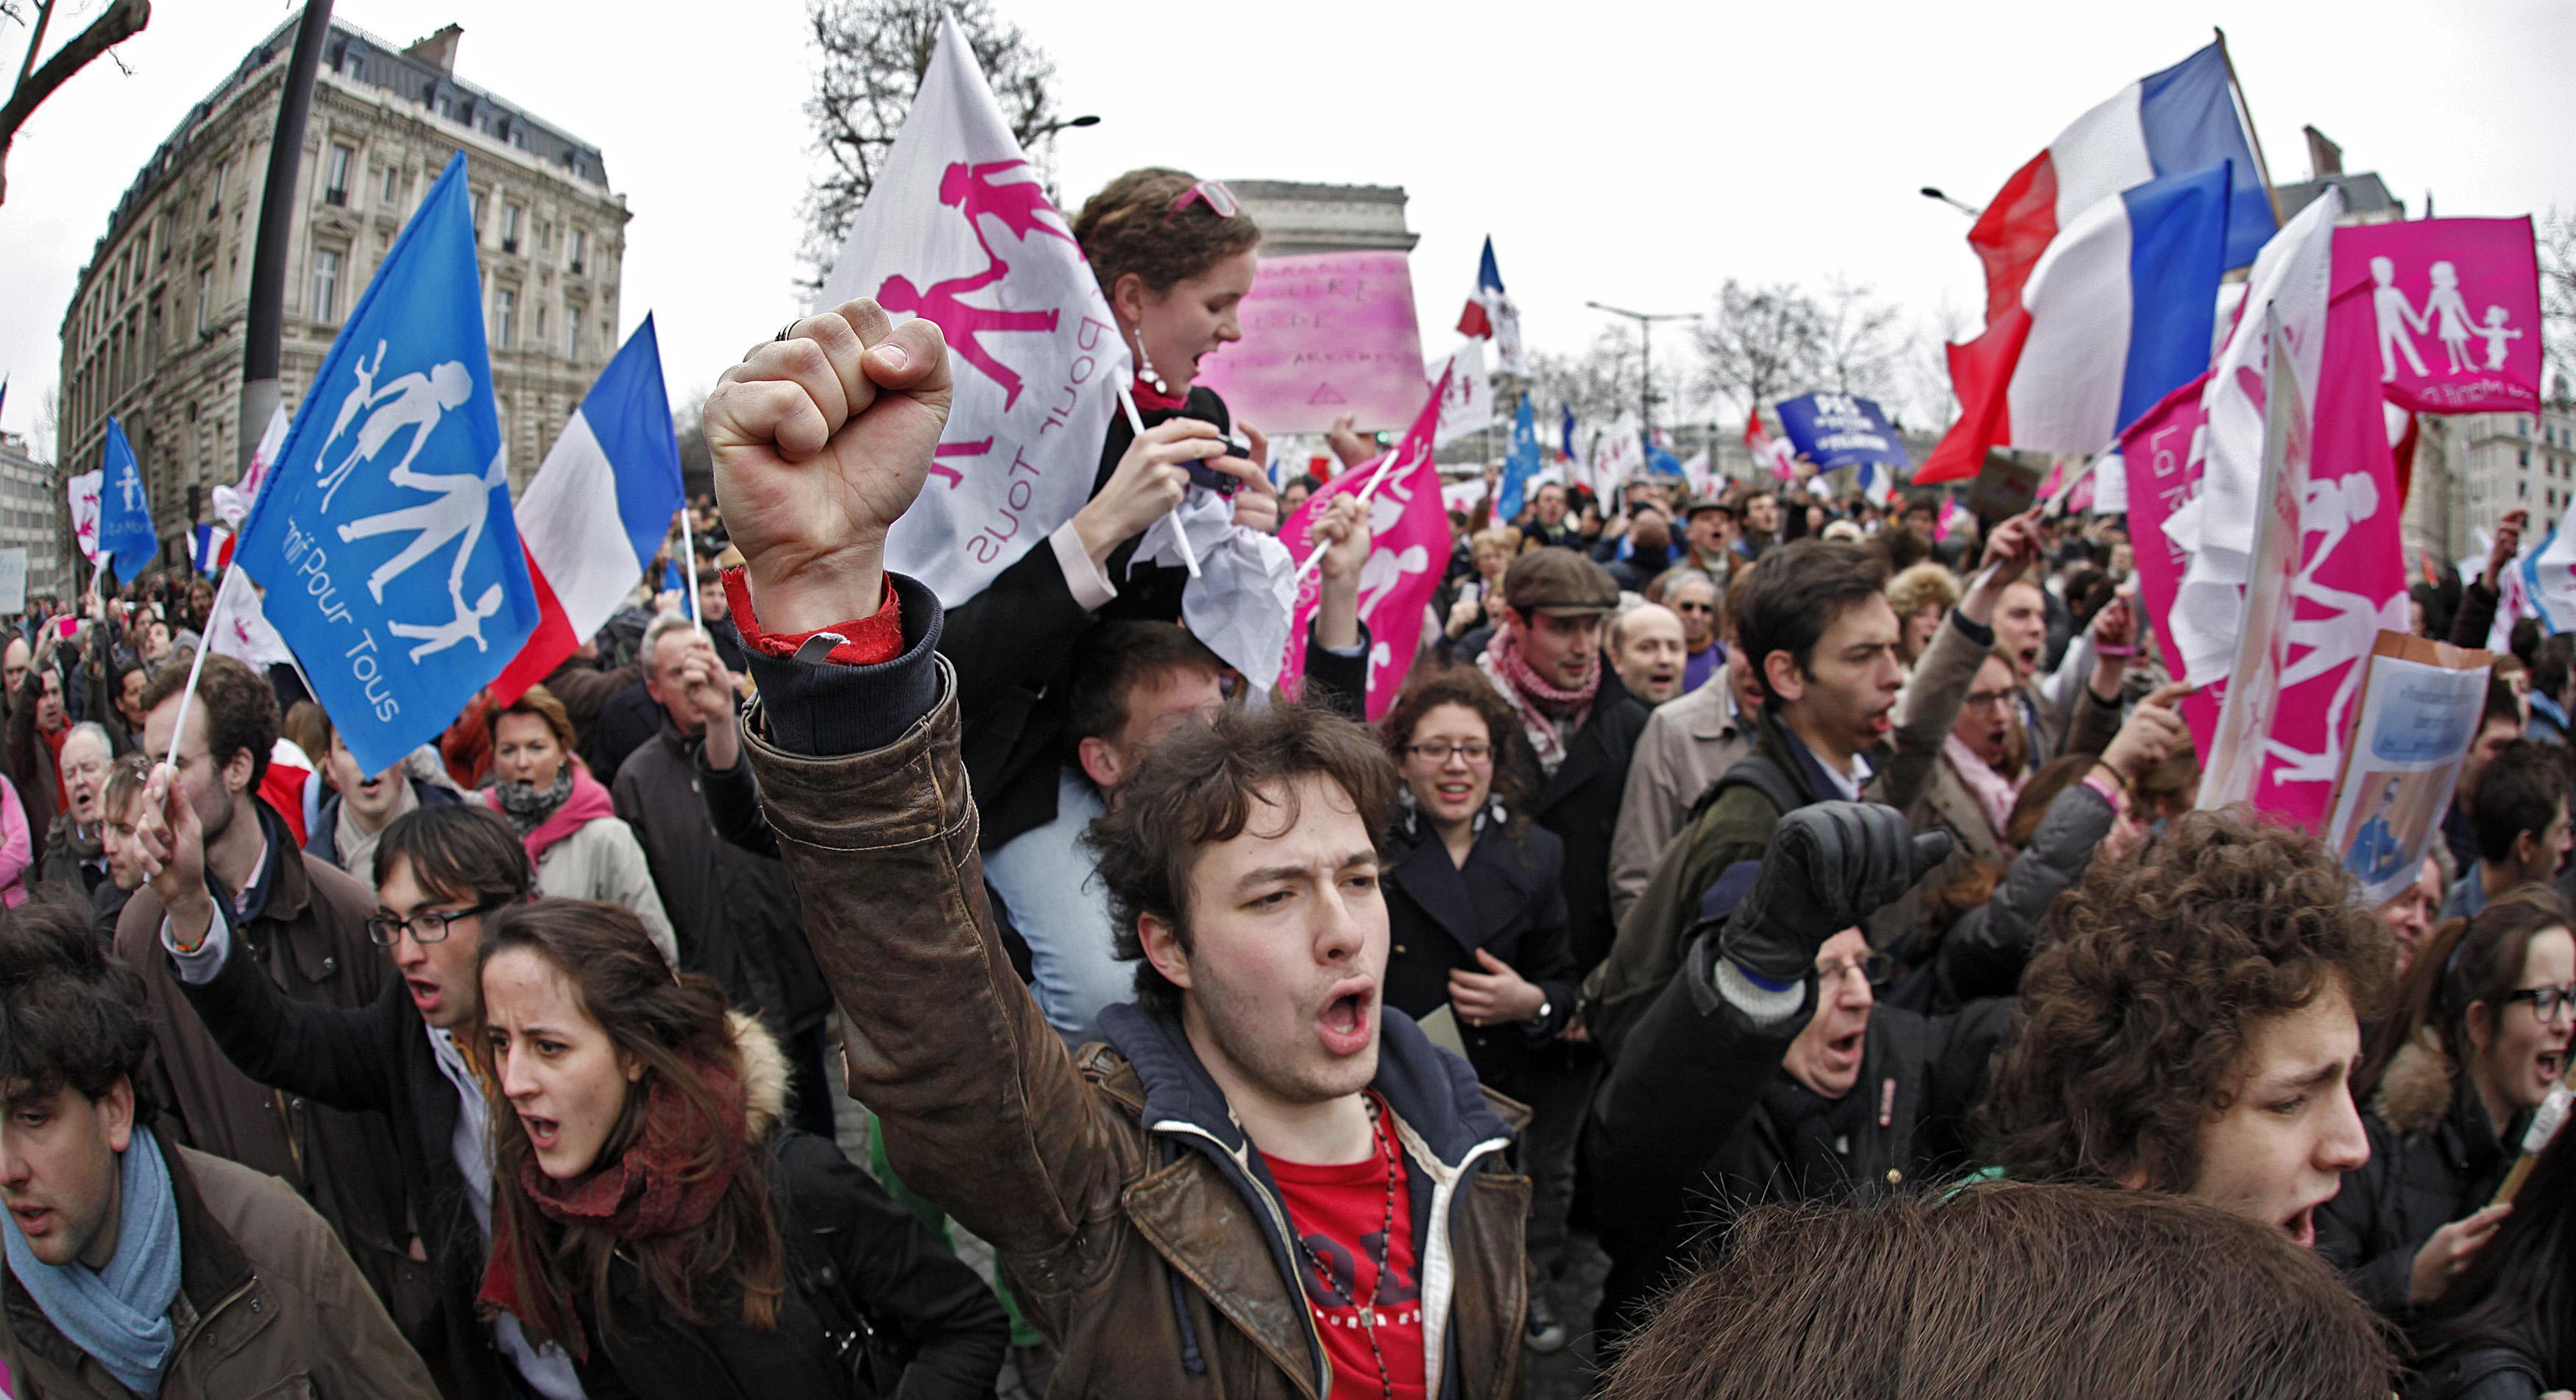 Παρίσι: Τεράστια διαδήλωση κατά των γάμων μεταξύ αμοφυλόφιλων